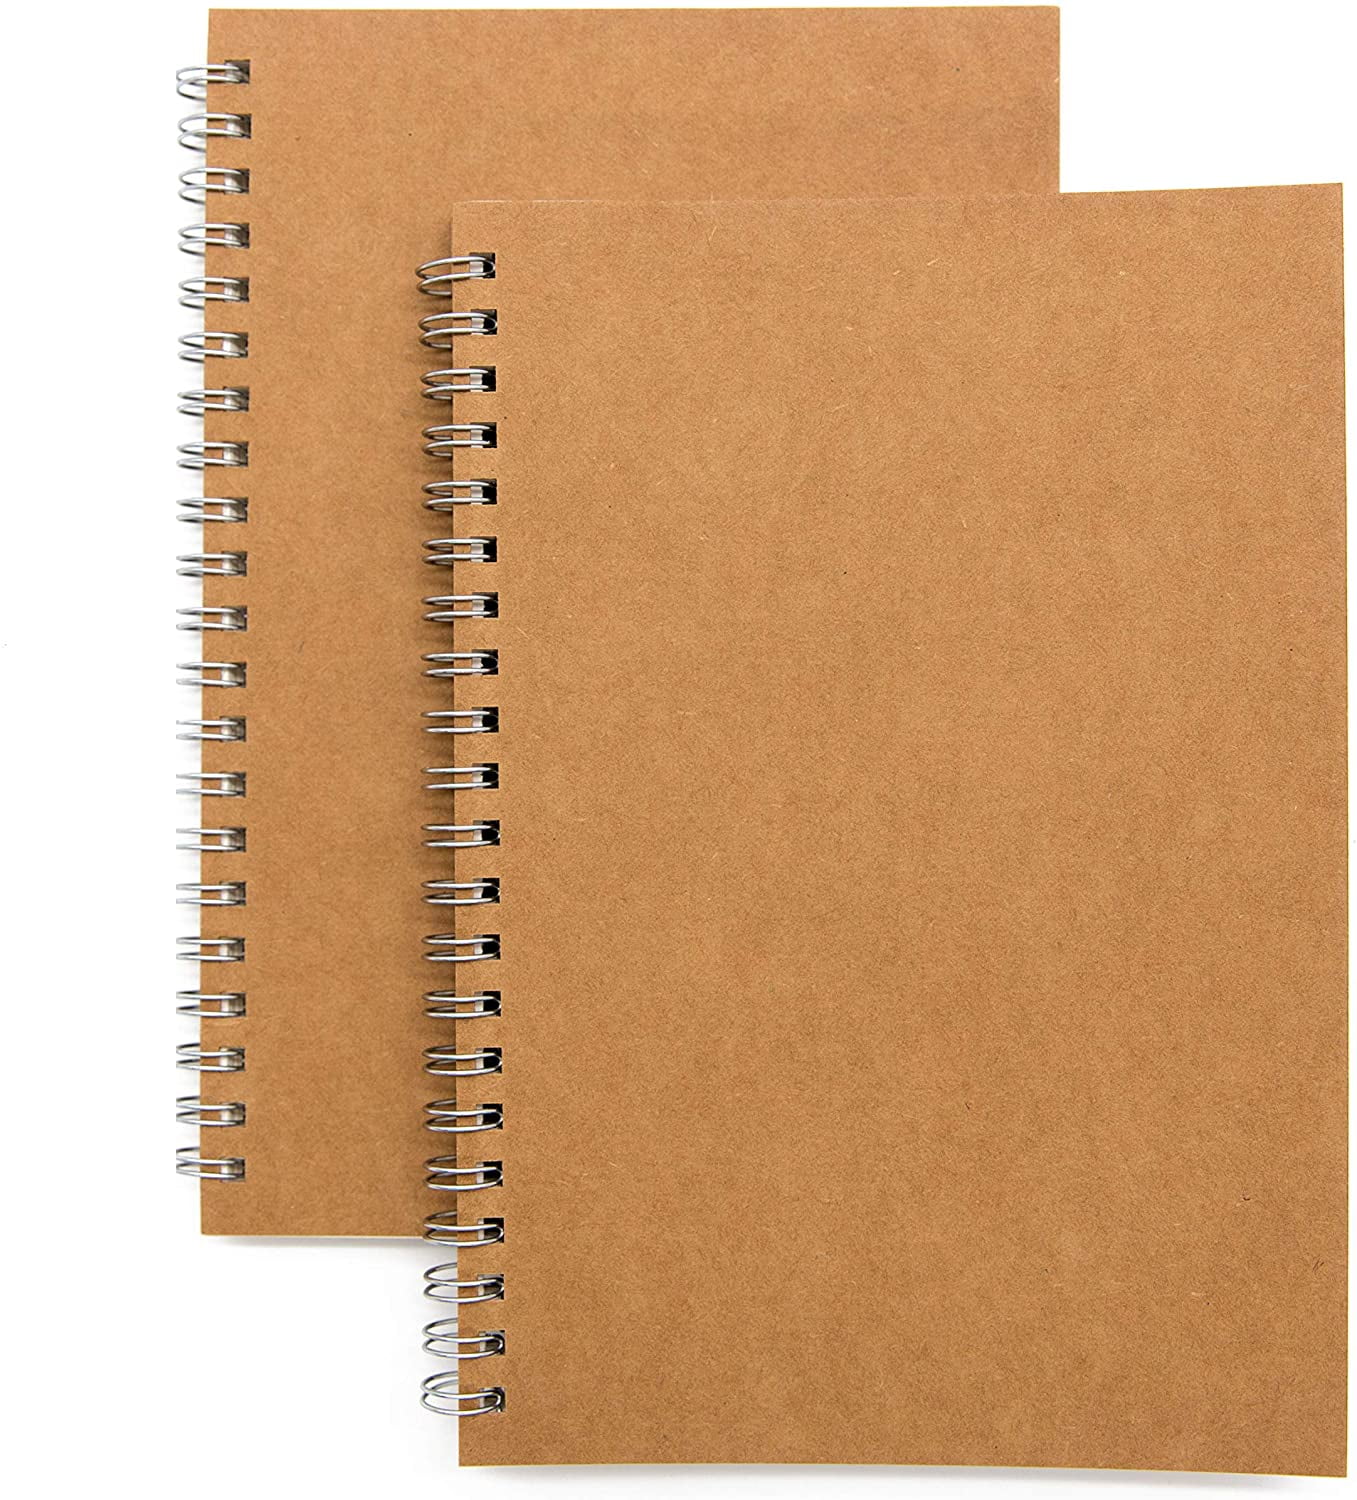 Diary School Book Teacher Print Notepad Journal Notebook Sketch Blank 